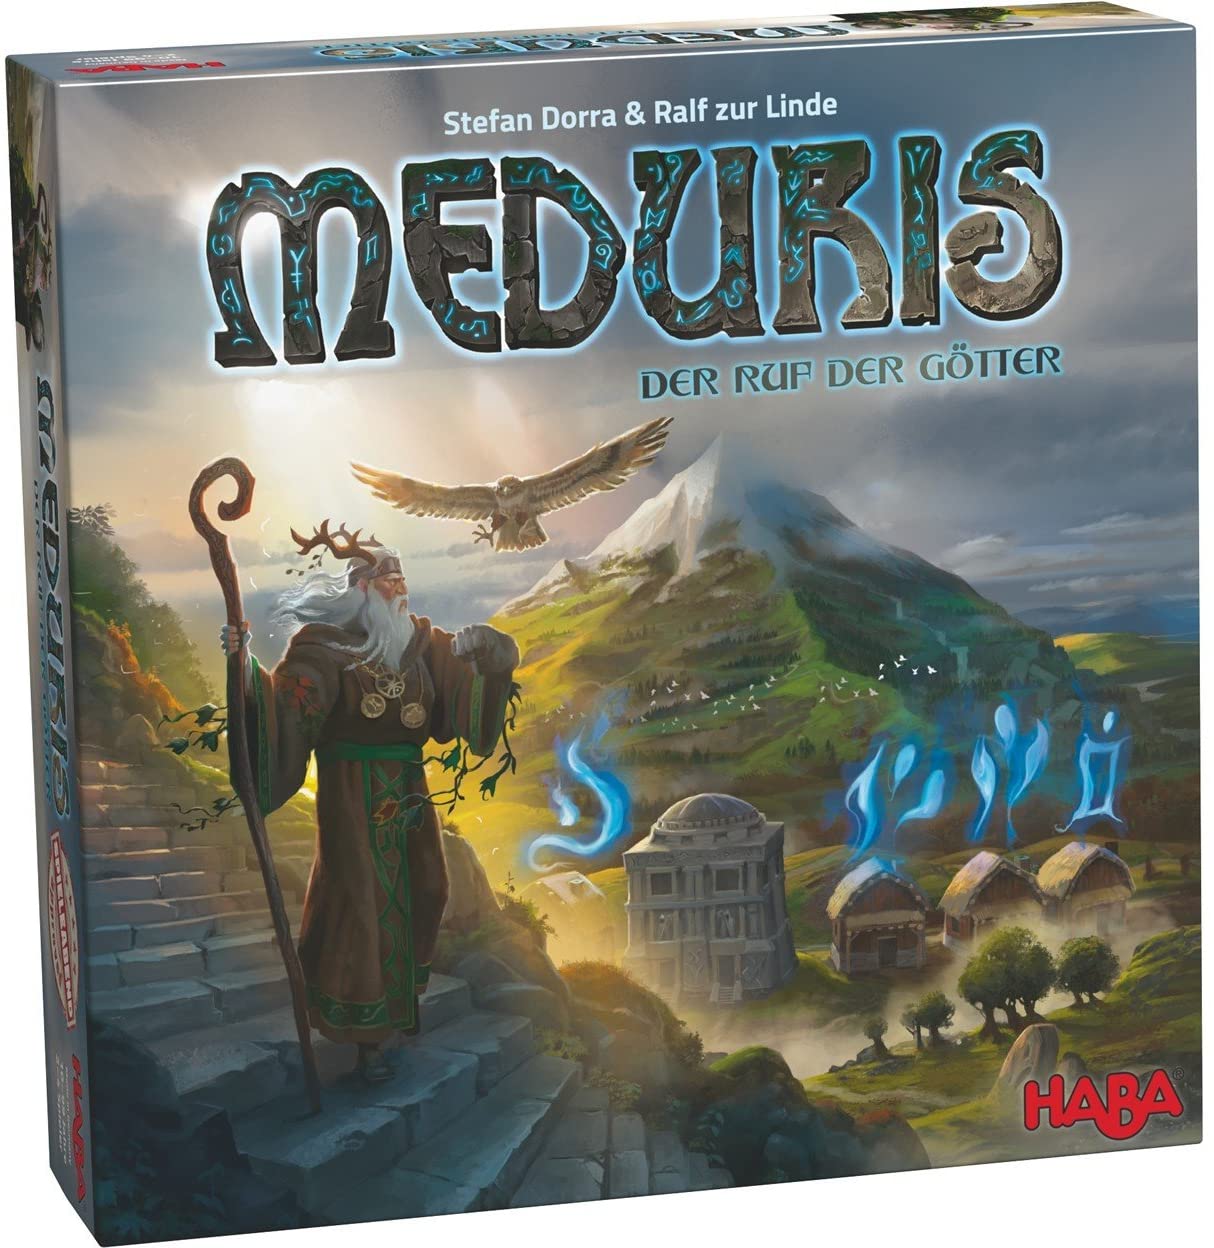 Meduris: The Call of the Gods